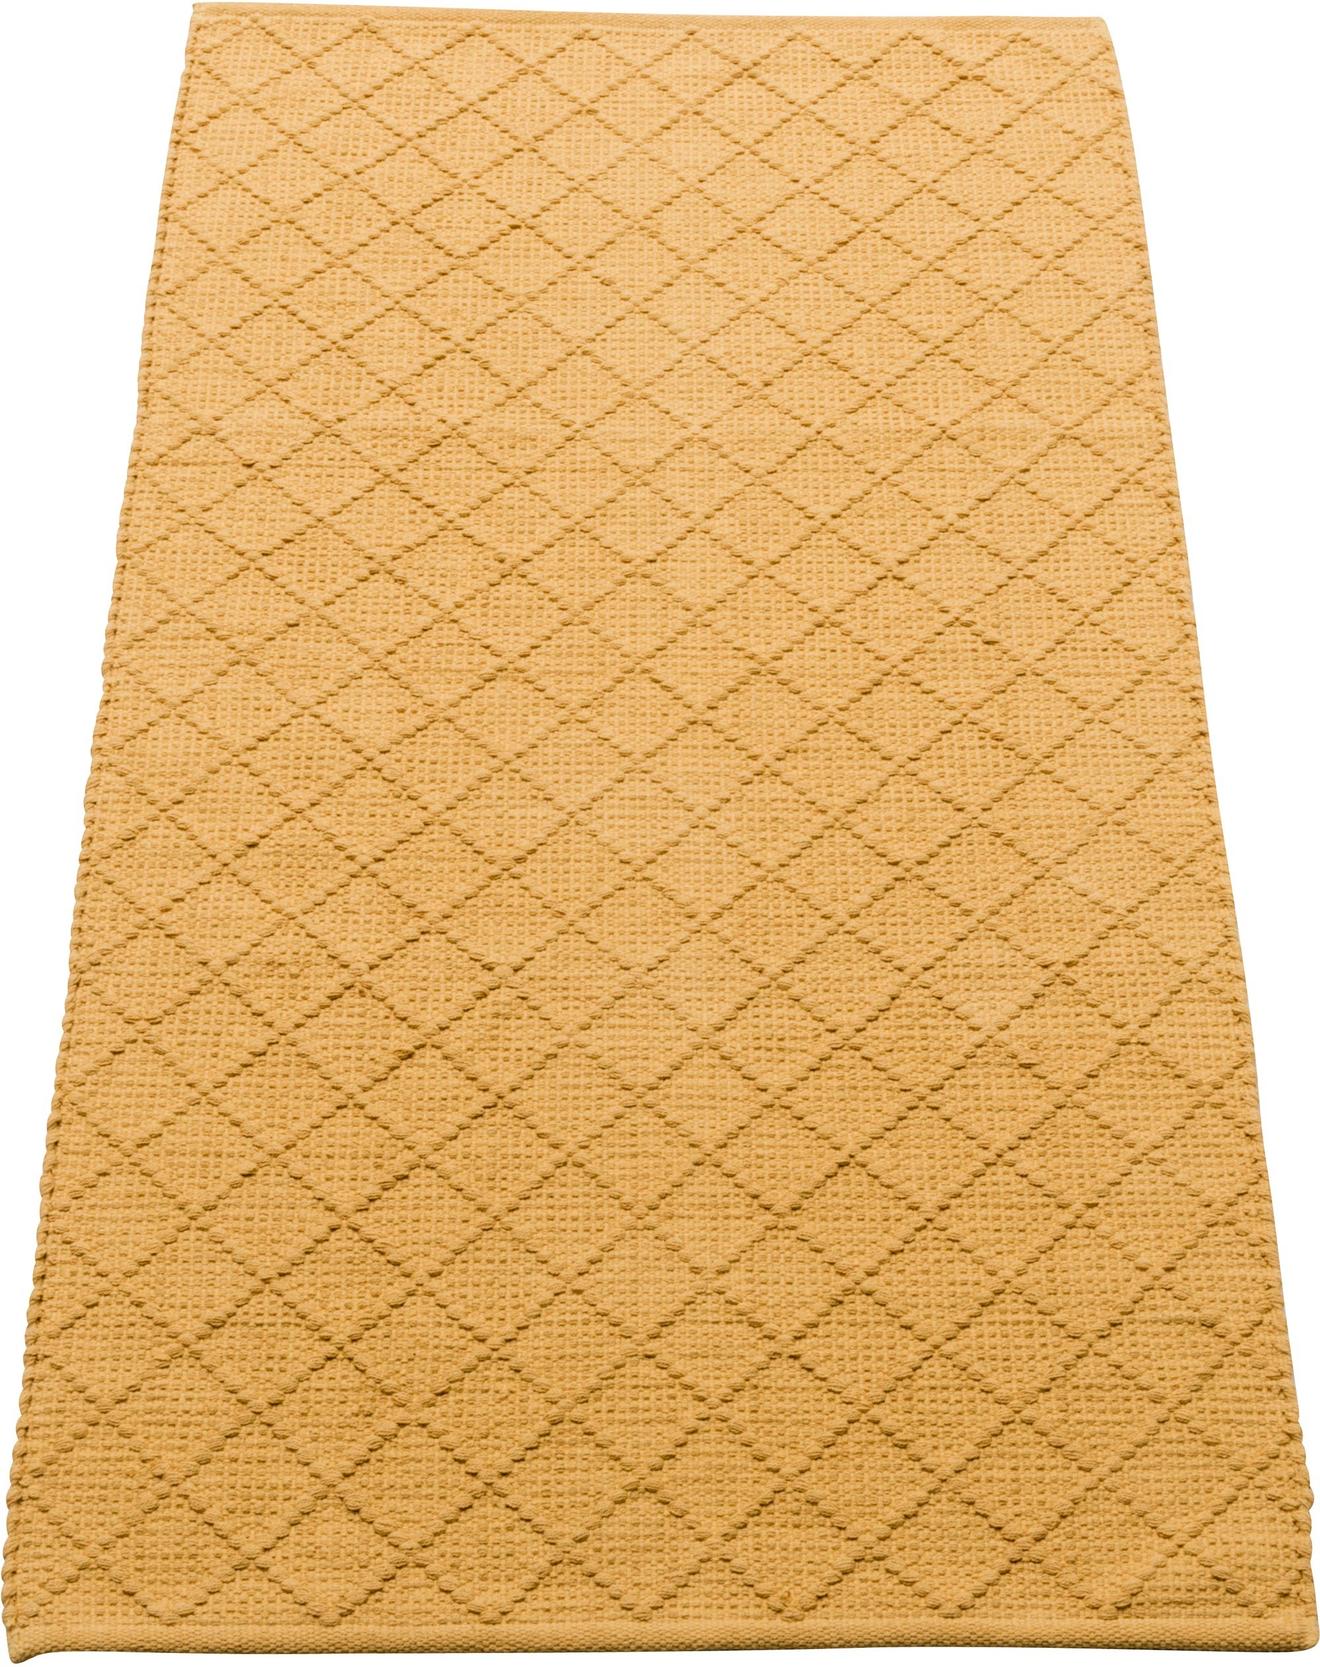 Koti matto 80x150 cm, keltainen tuote hintaan 15€ liikkeestä MASKU